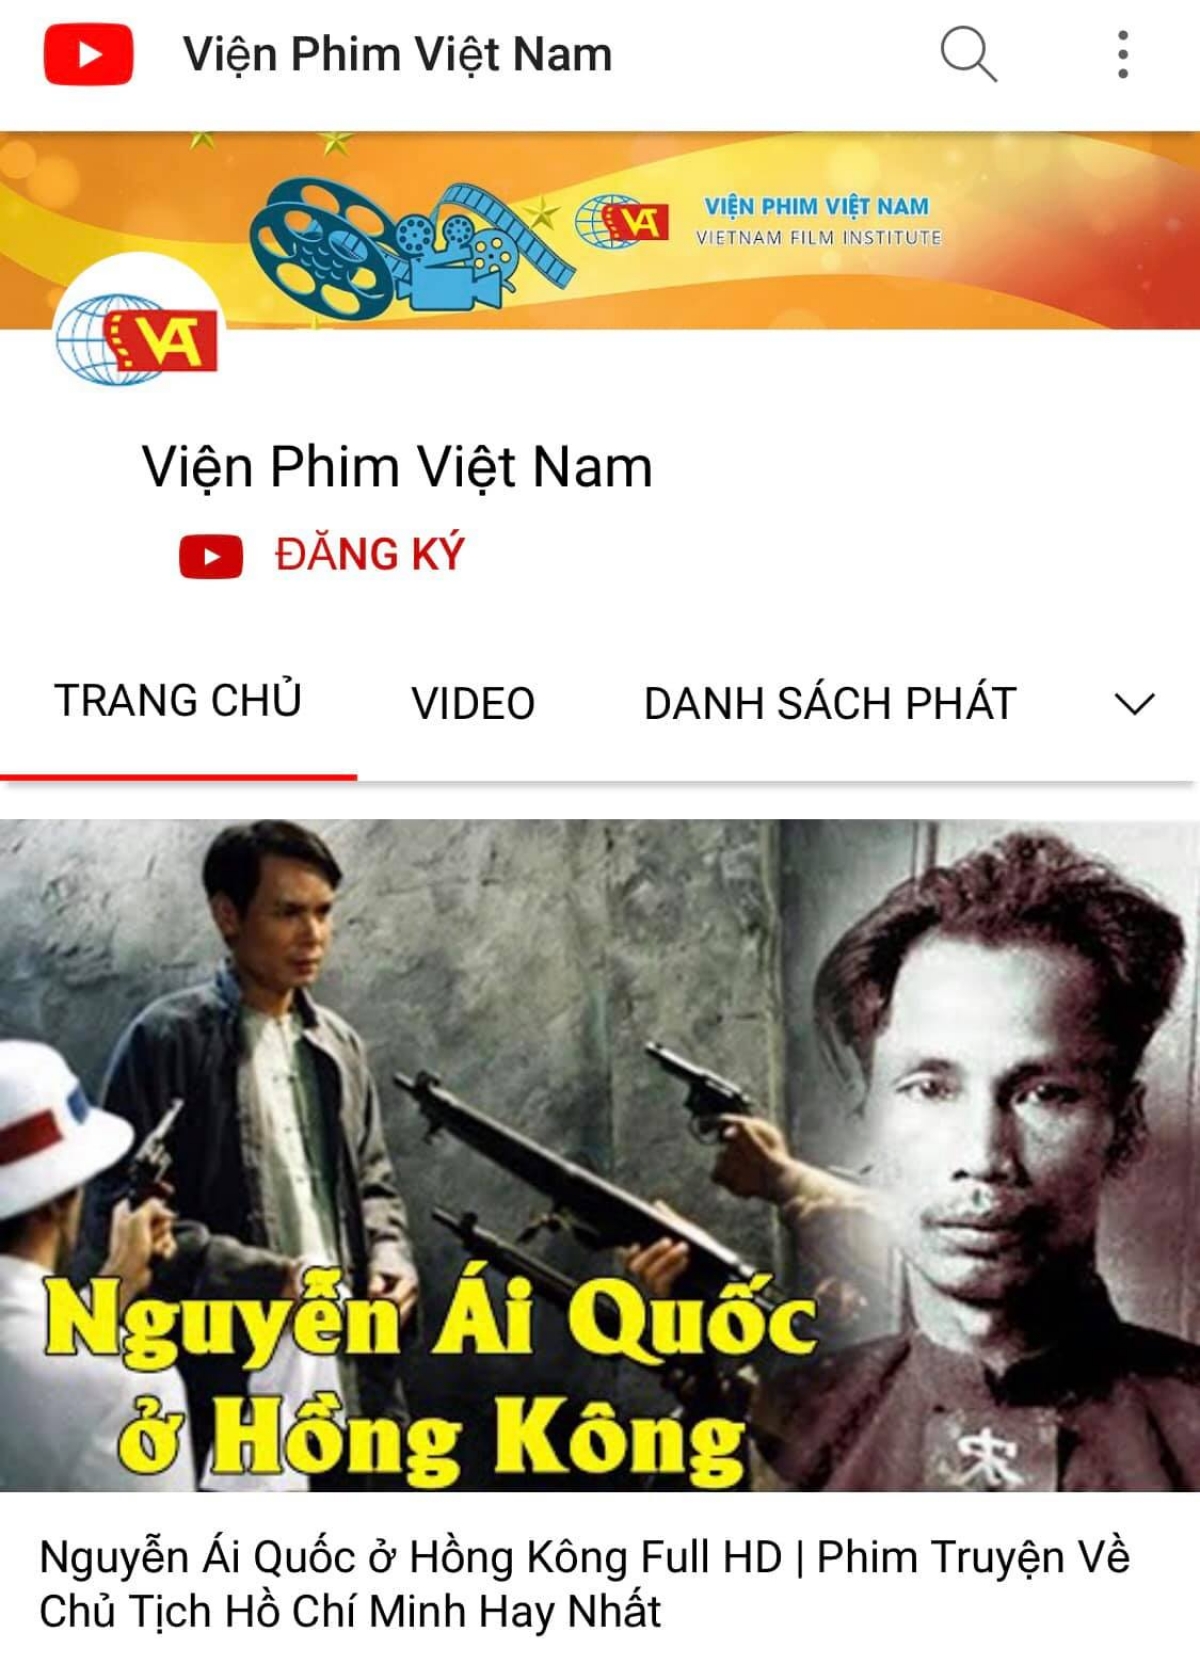 Youtube Viện Phim Việt Nam là nơi có những tác phẩm phim đặc sắc của Việt Nam, cho phép người xem dễ dàng tìm hiểu về lịch sử, văn hóa và nghệ thuật của đất nước. Hãy cùng truy cập và thưởng thức các tác phẩm điện ảnh đa dạng và phong phú tại Youtube Viện Phim Việt Nam.